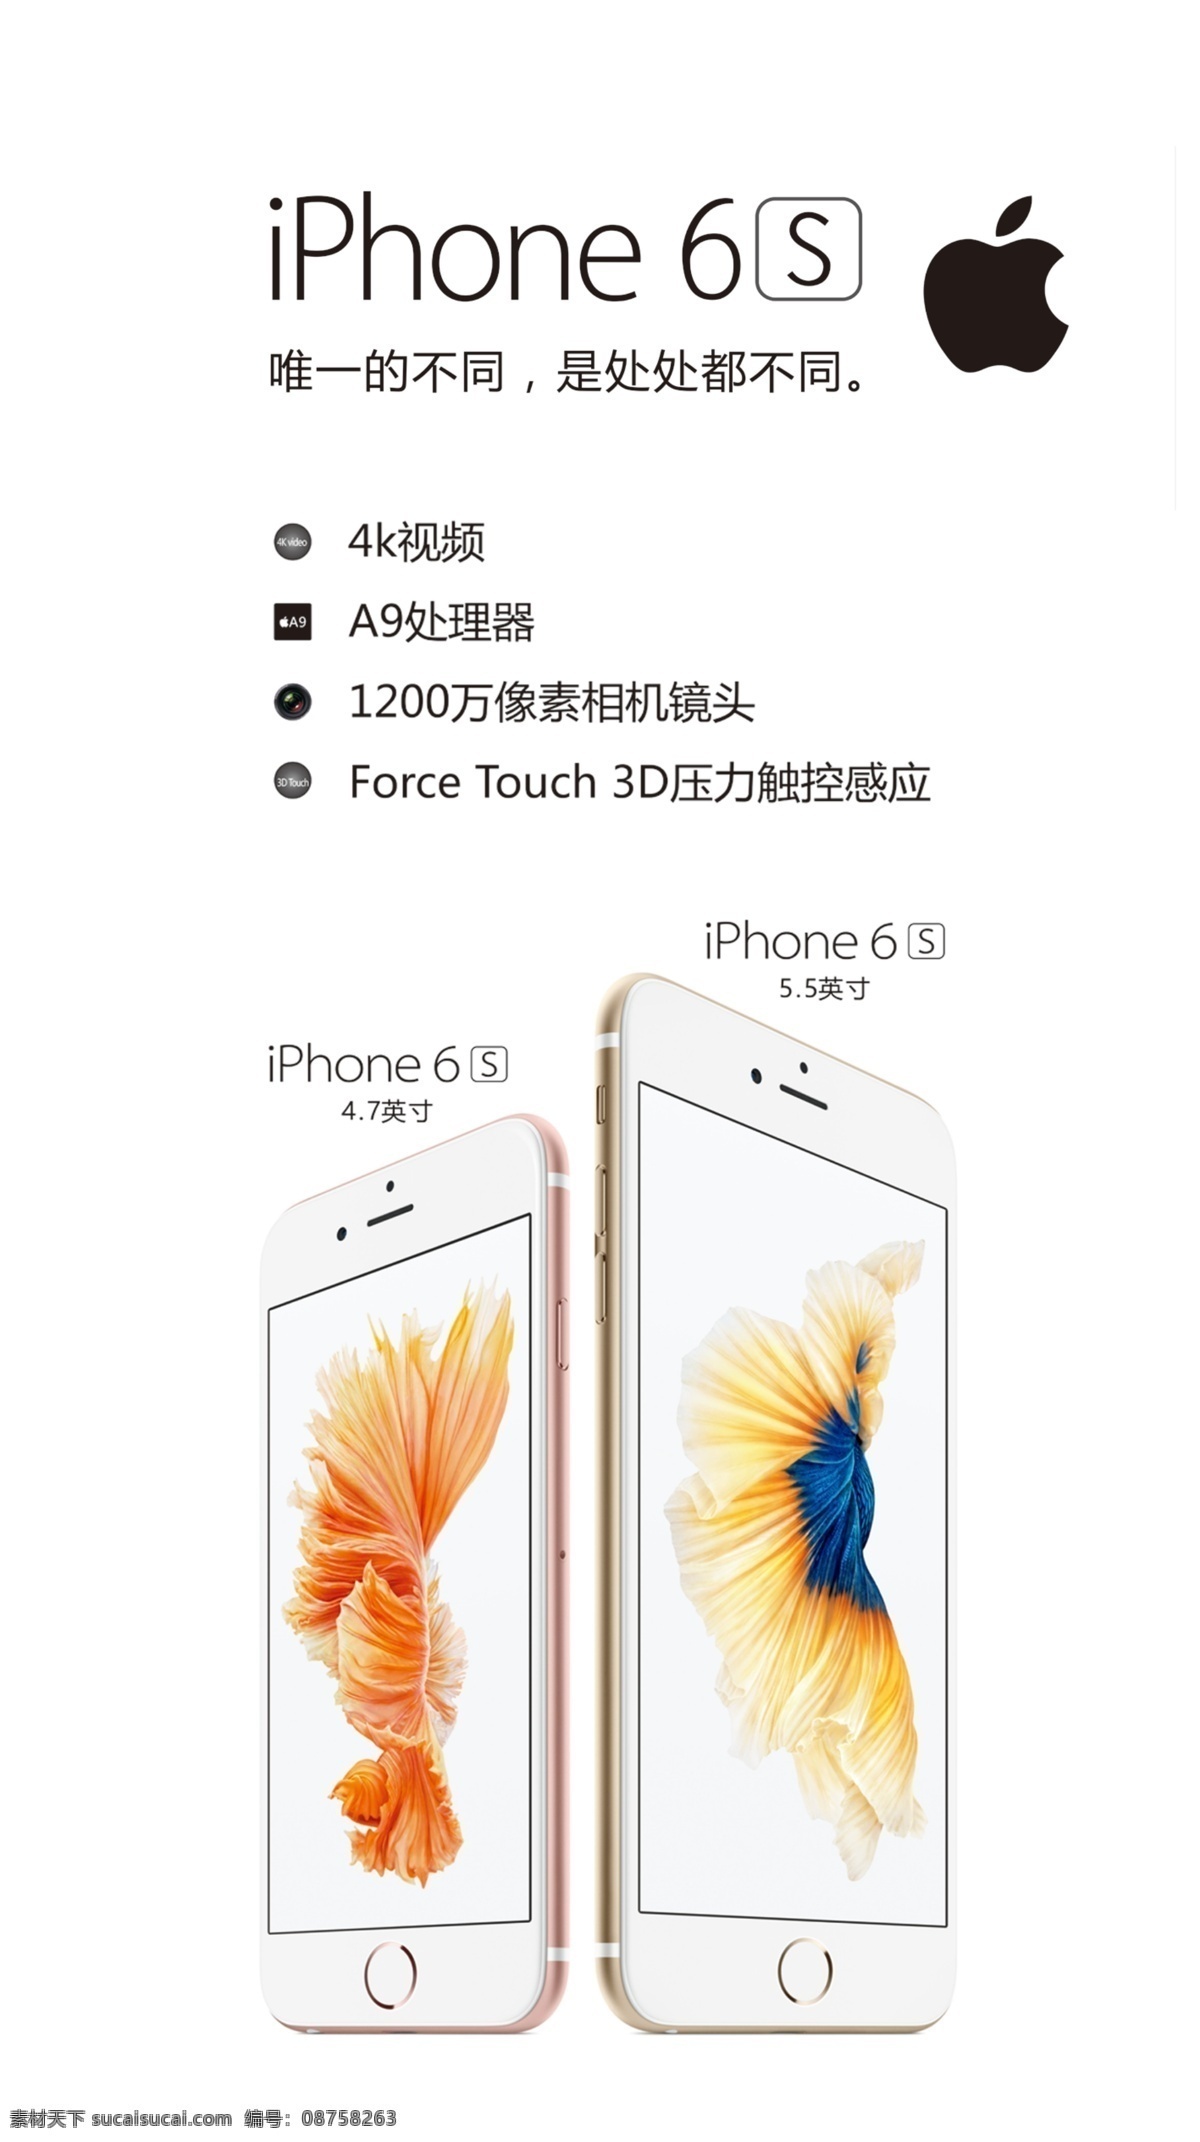 苹果 苹果手机 灯箱片 手机 唯一不同 是处处不同 6s iphone 白色